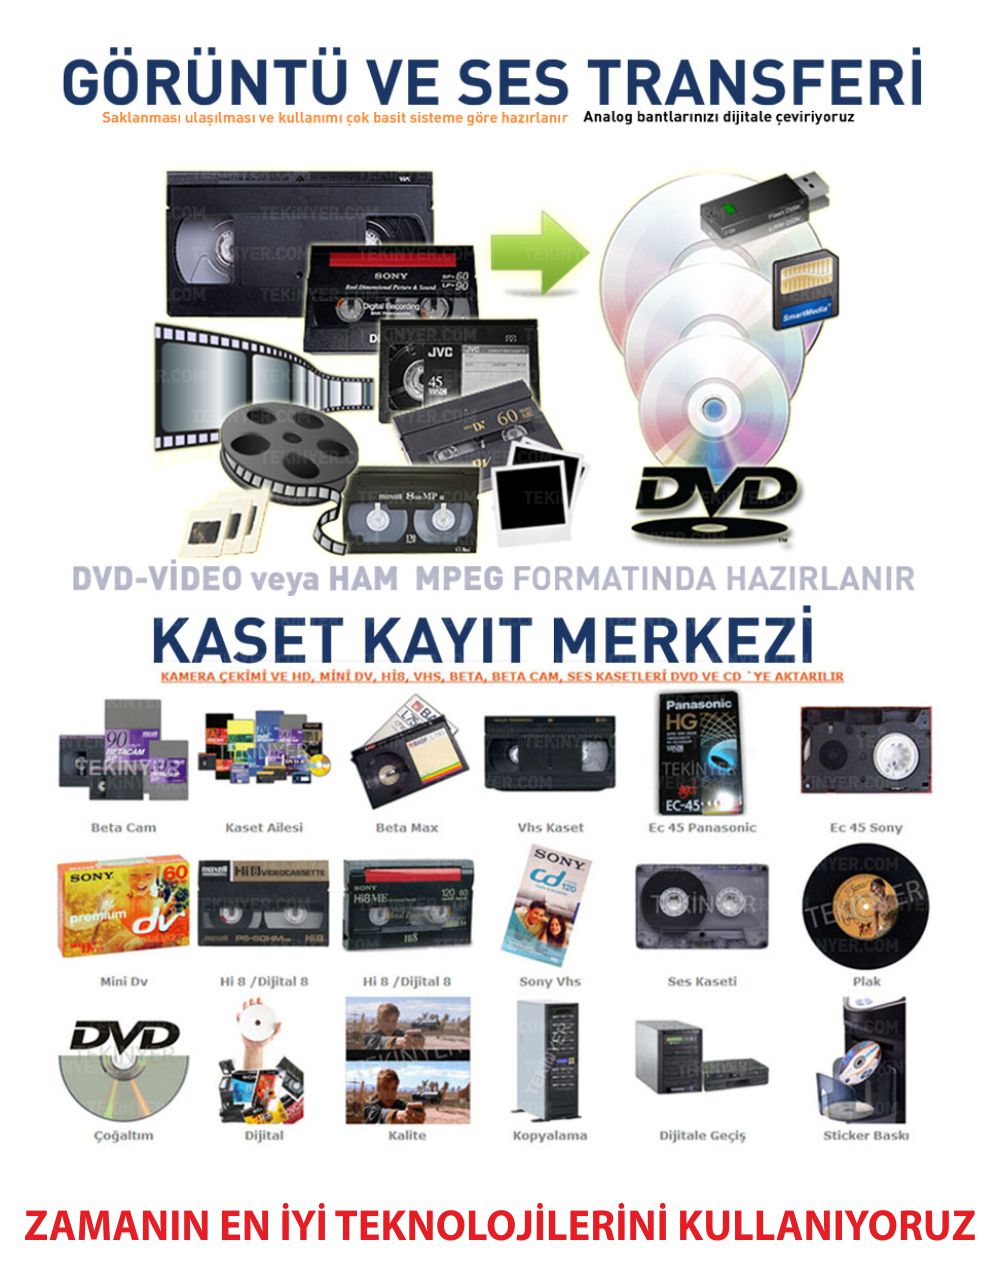 Vhs Betamax Hi8 Dijital8 Mini DV Kasetten Aktarma Kasetten Zamanın en iyi teknolijilerini kullanana Aktarım Kayıt Merkezi